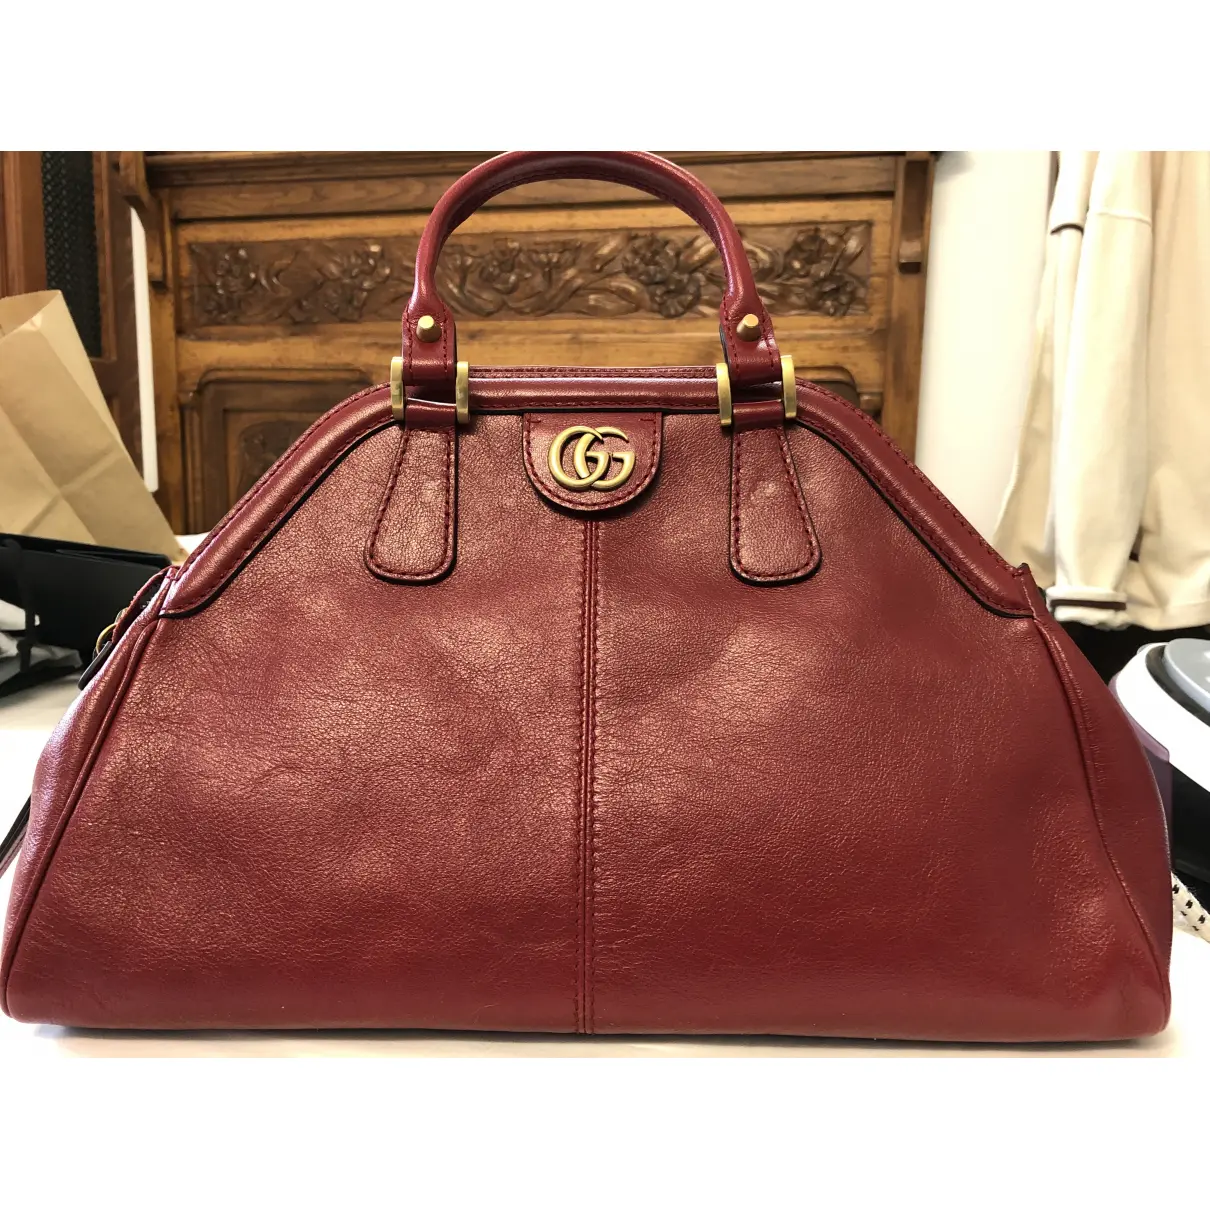 Buy Gucci Re(belle) leather handbag online